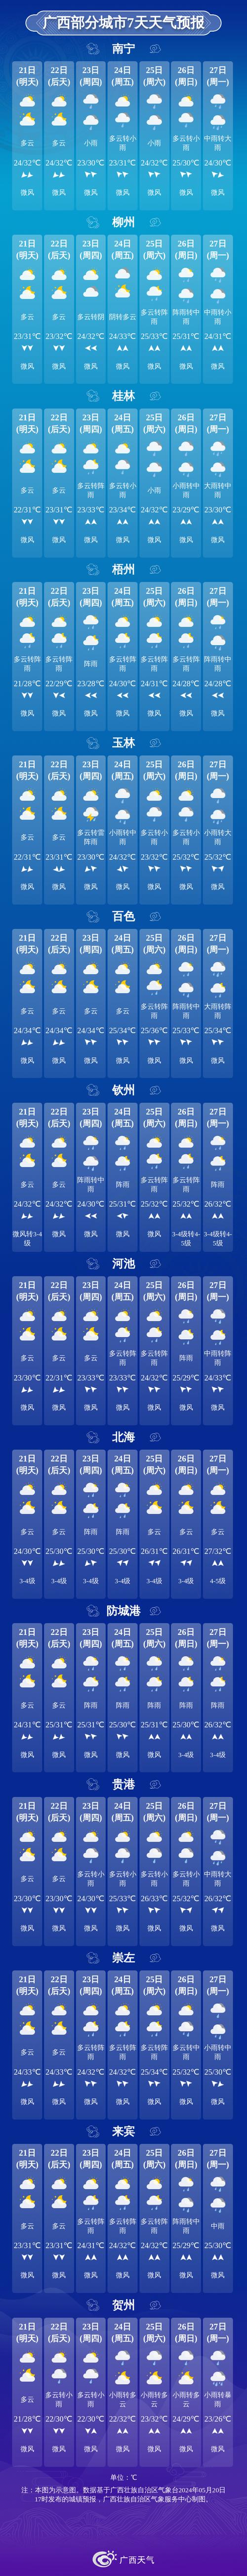 桂林11月天气